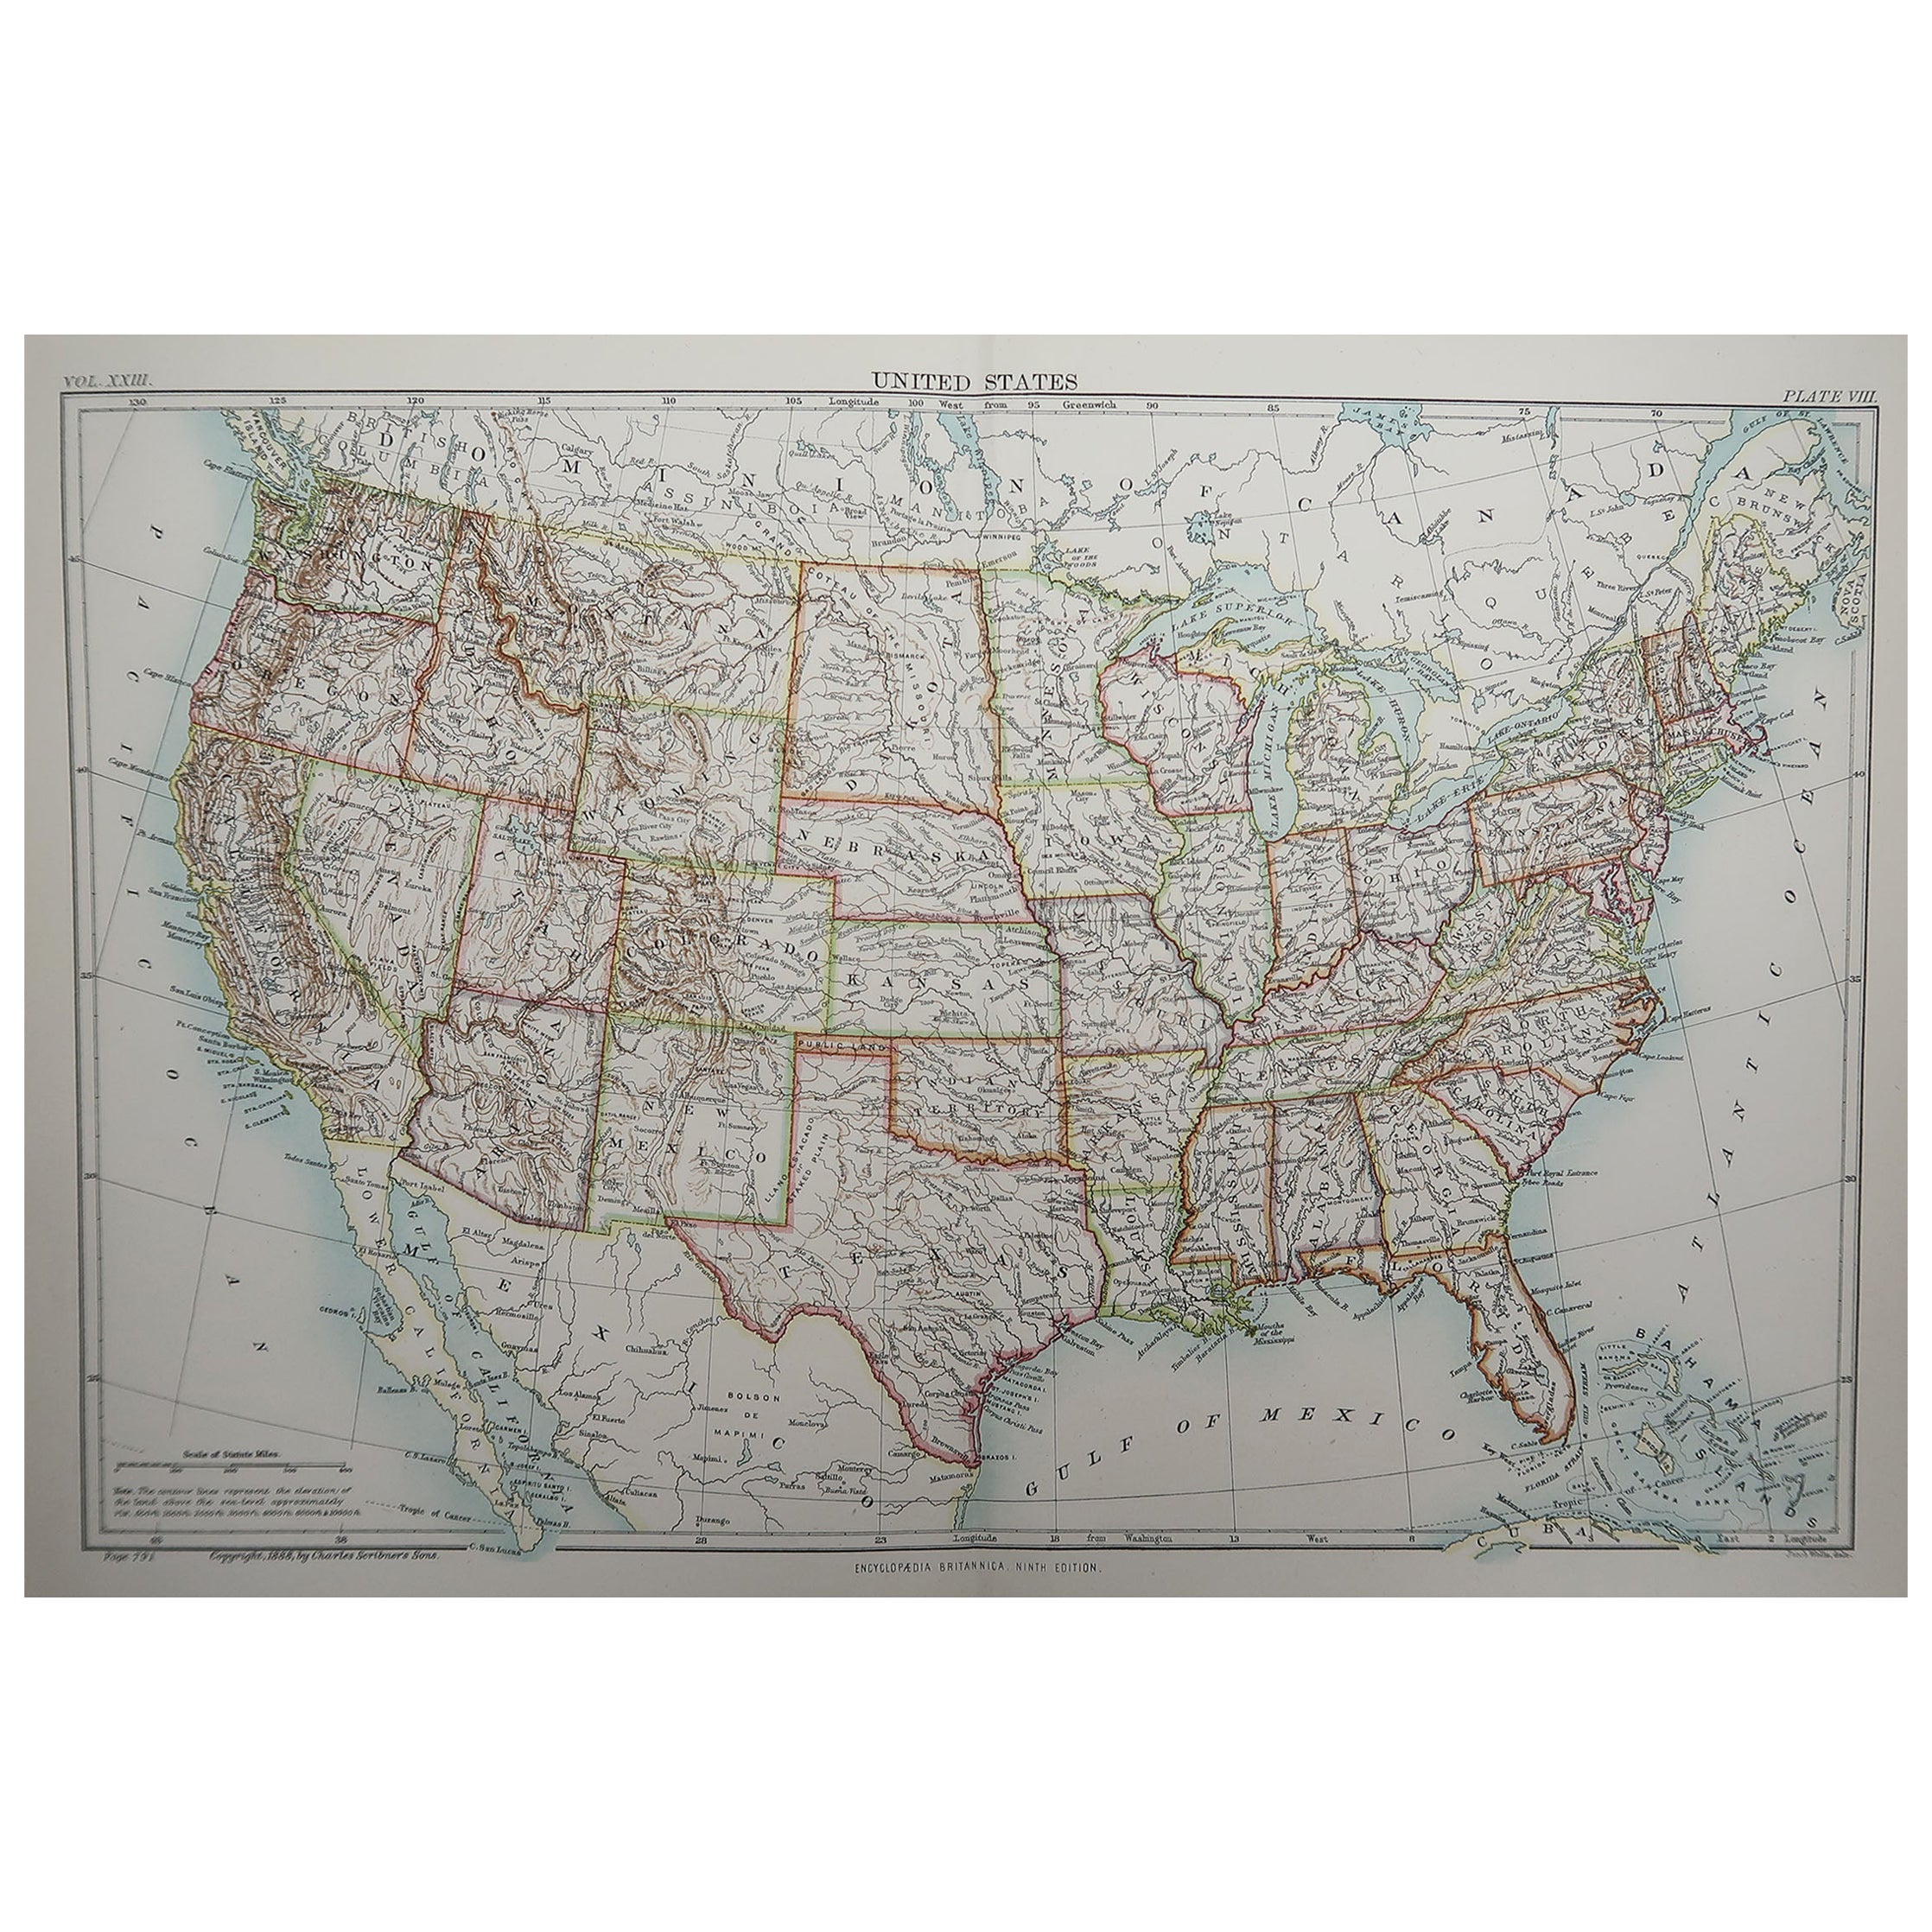 Original Antique Map of The United States of America, 1889